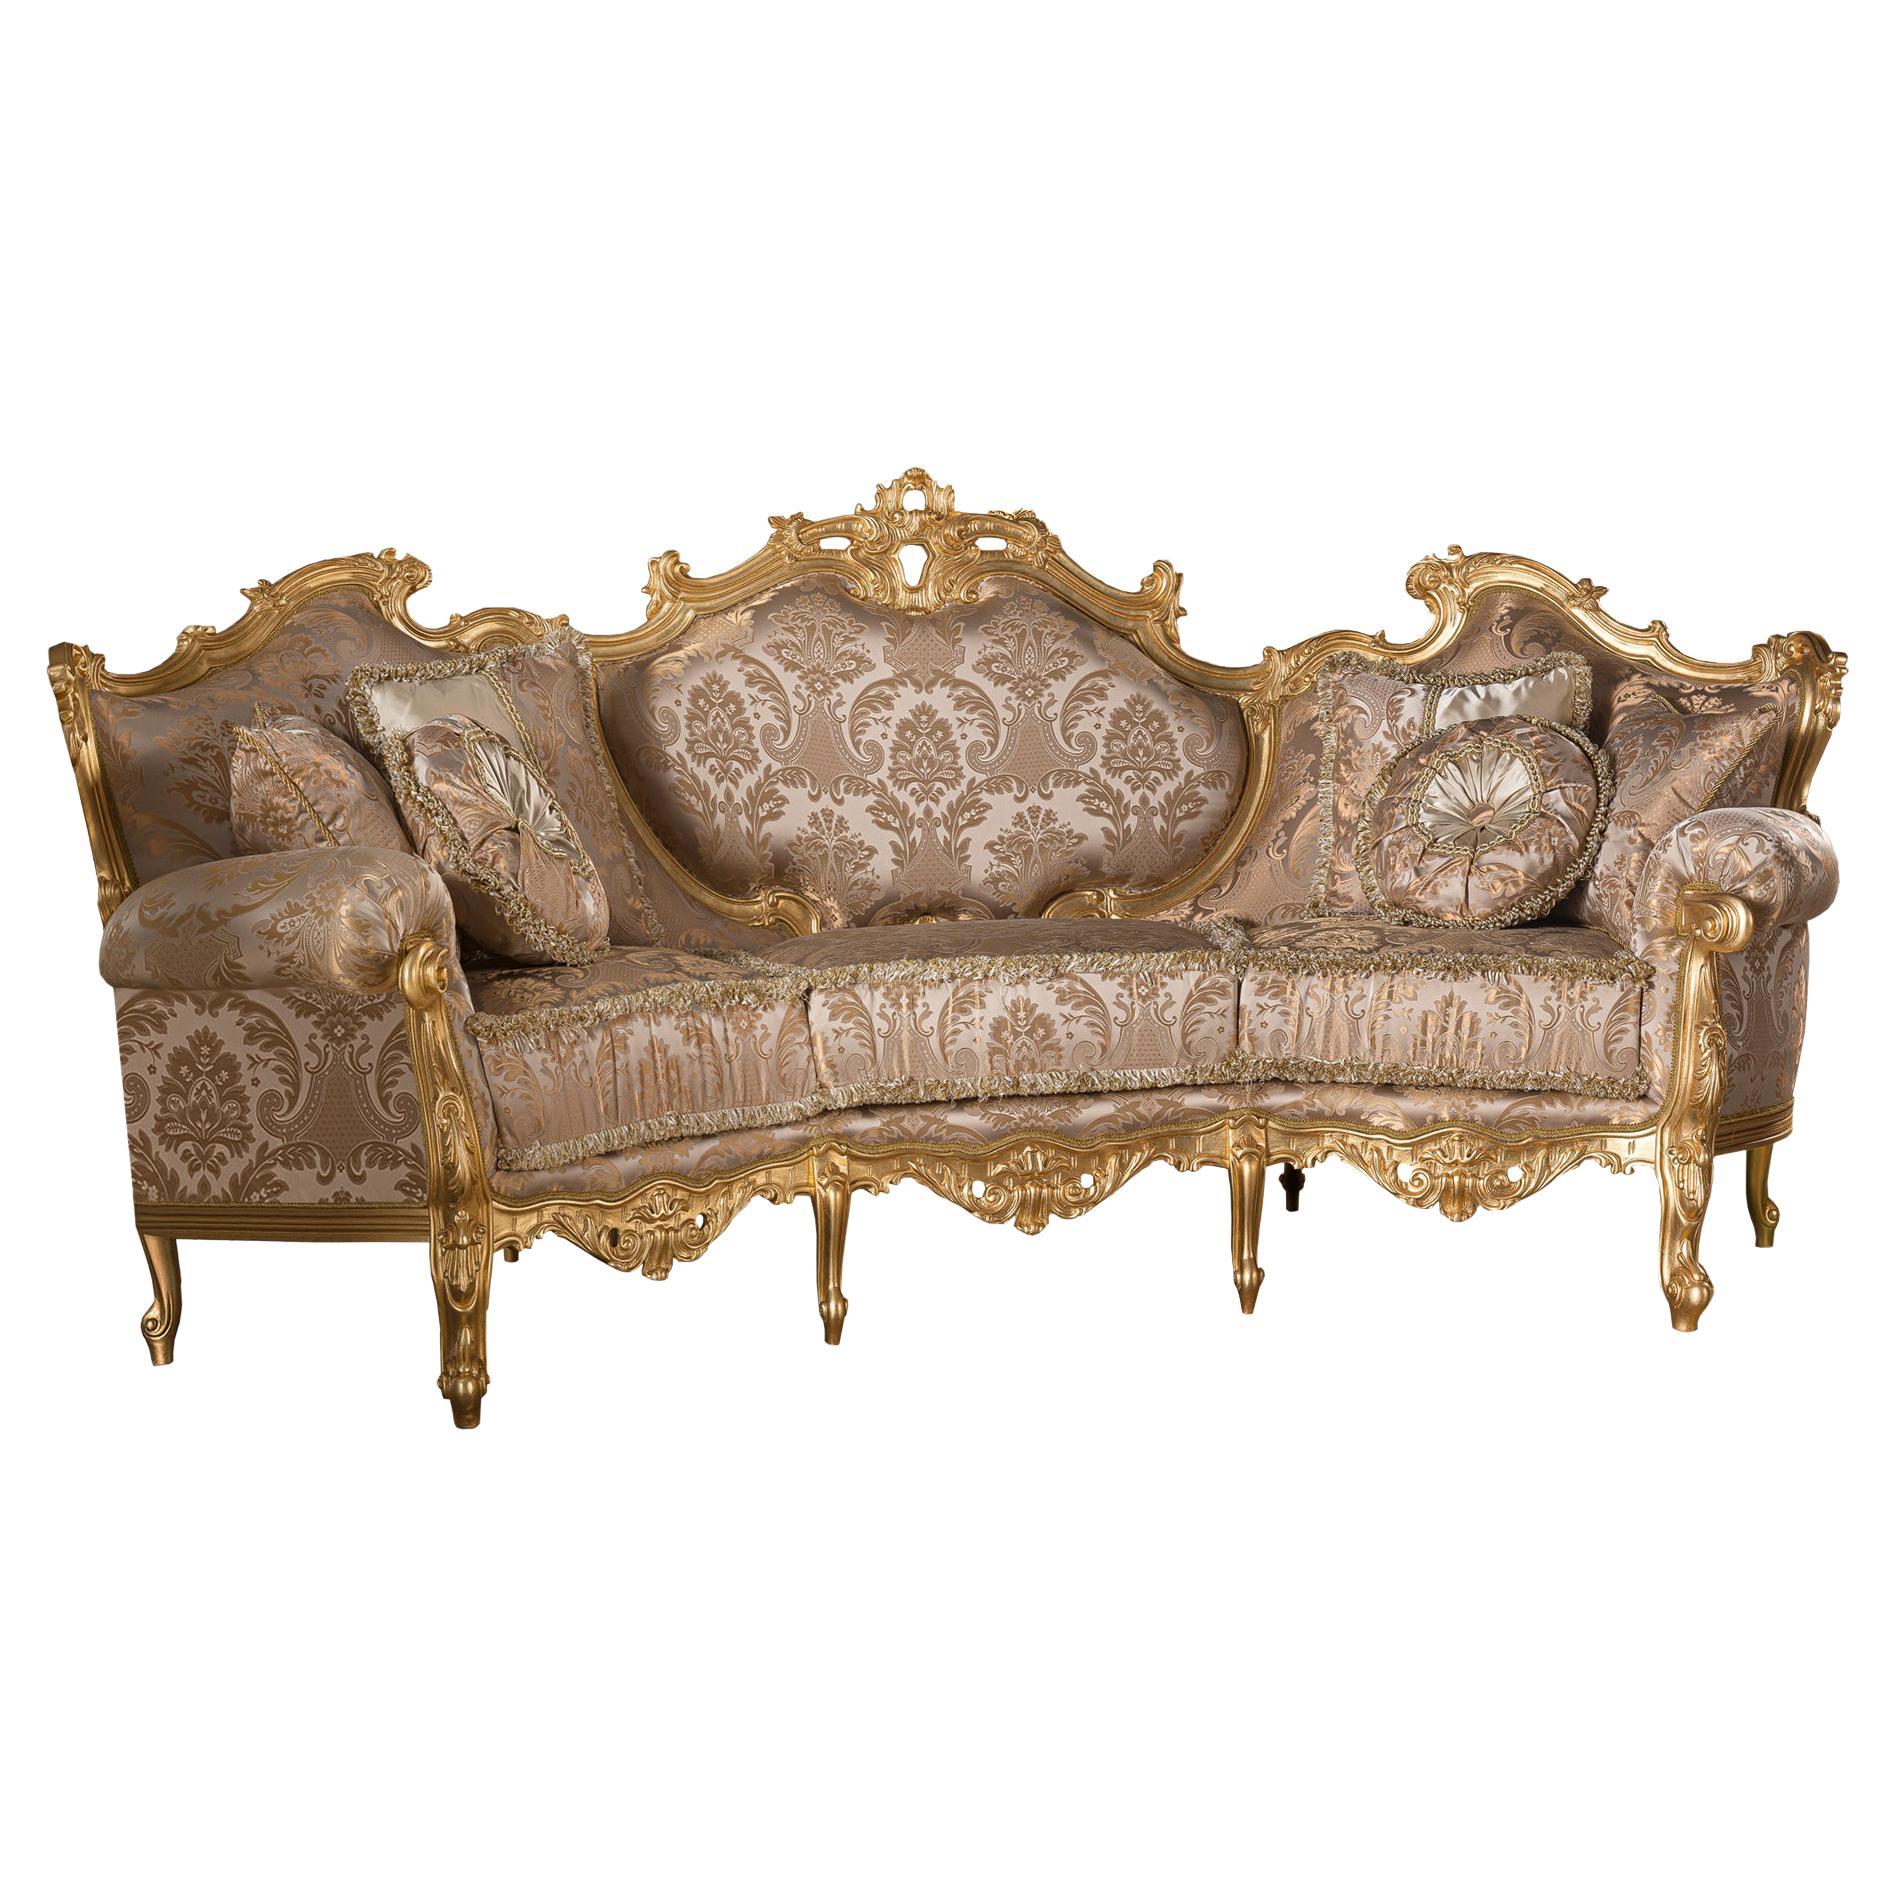 Sofa Deluxe italien à trois places en bois massif de qualité supérieure avec décor en feuilles d'or